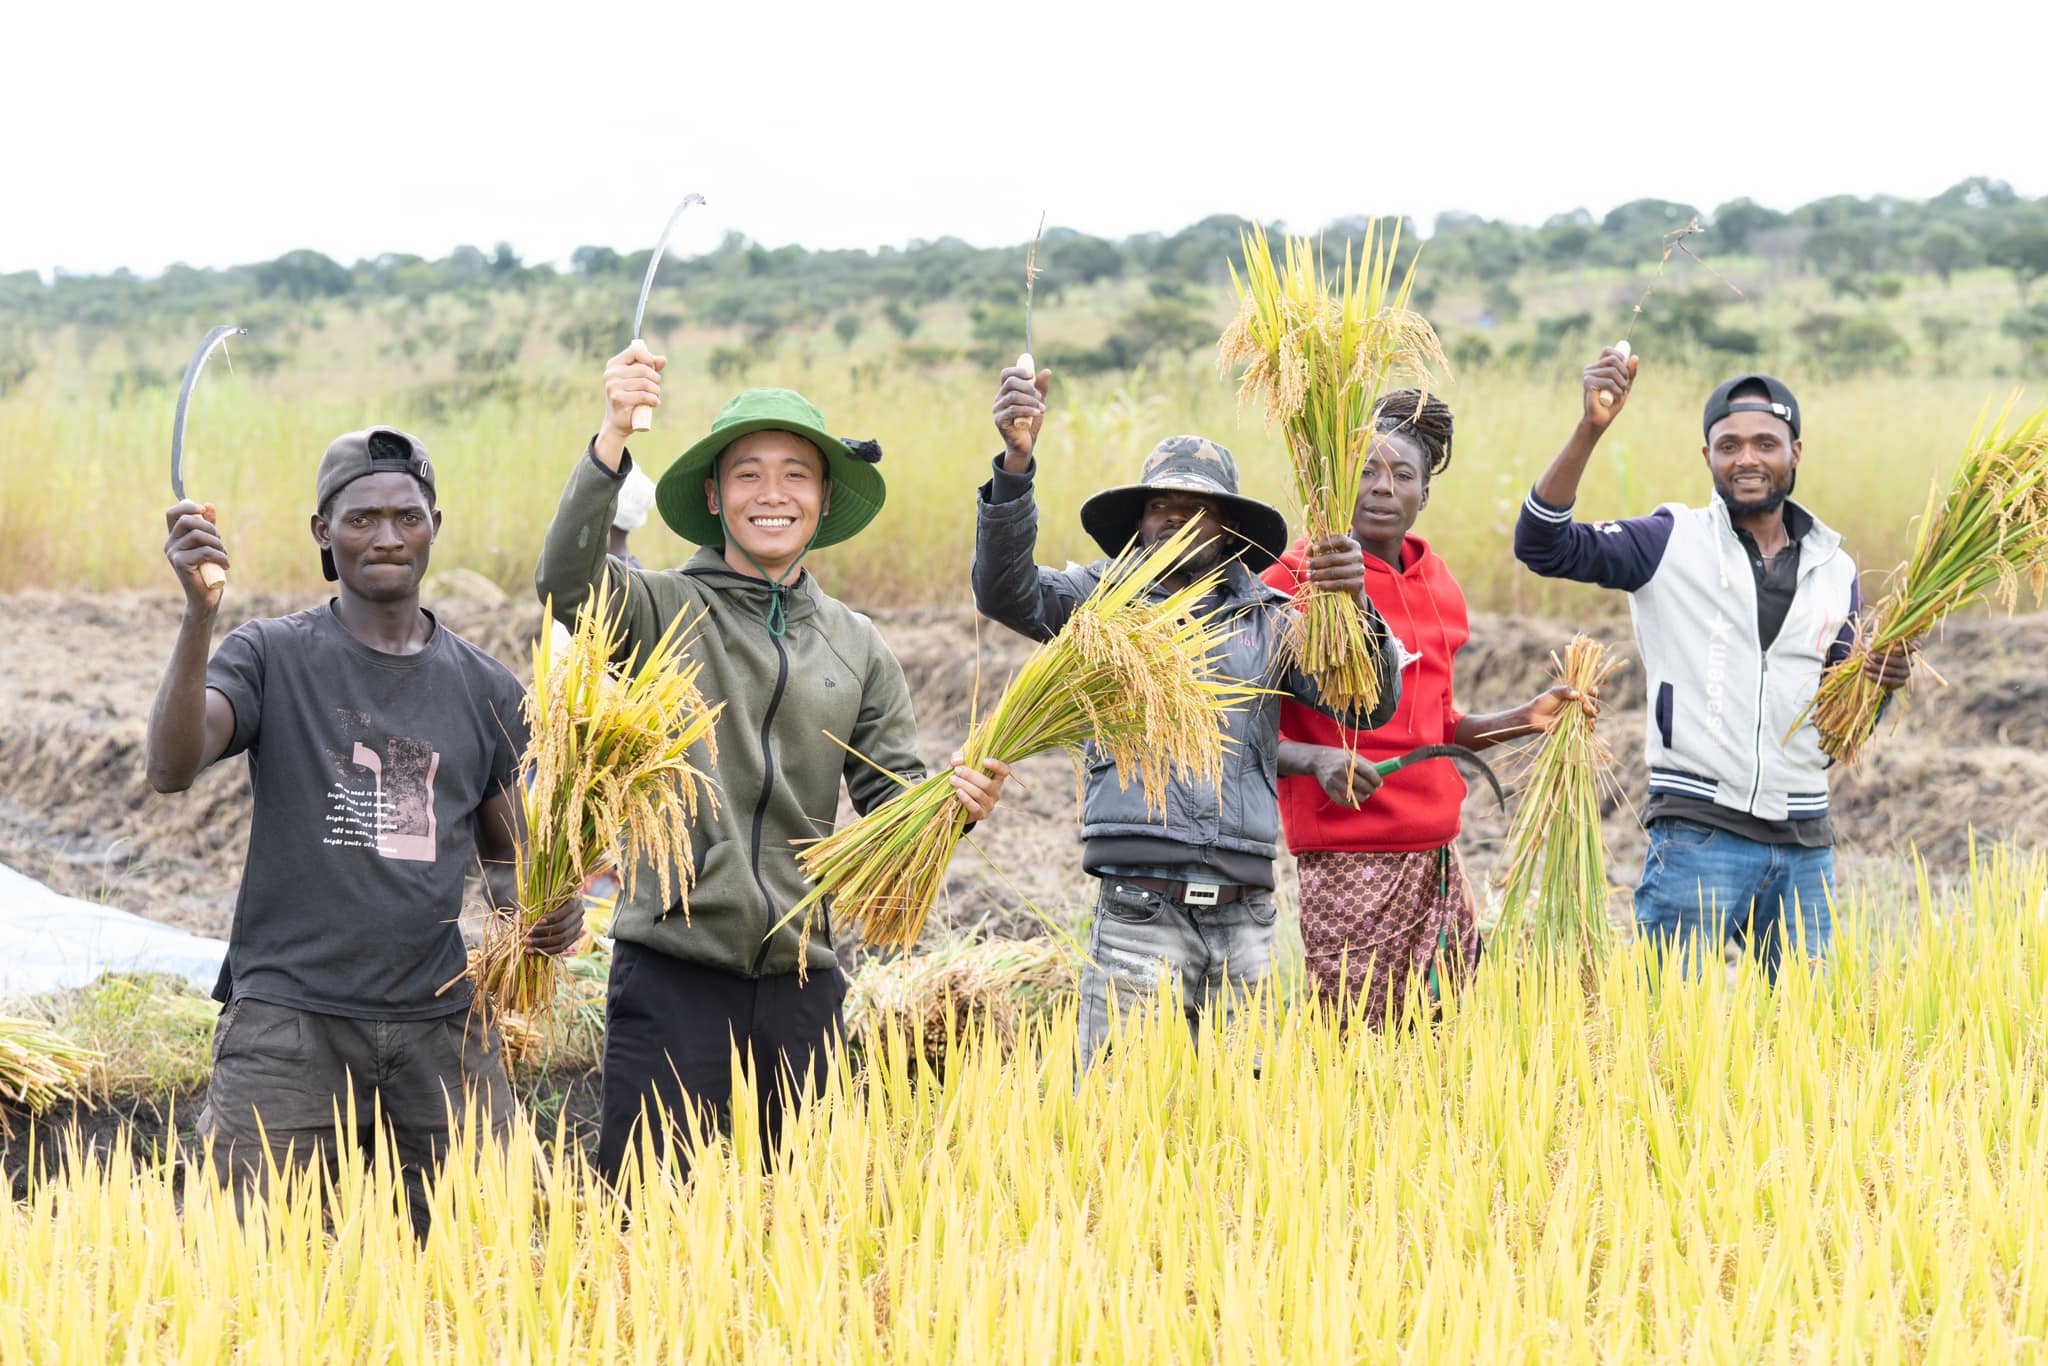 Phạm Quang Linh (thứ hai từ trái sang) thu hoạch lúa cùng người dân Angola, châu Phi. Ảnh: Quang Linh Vlogs